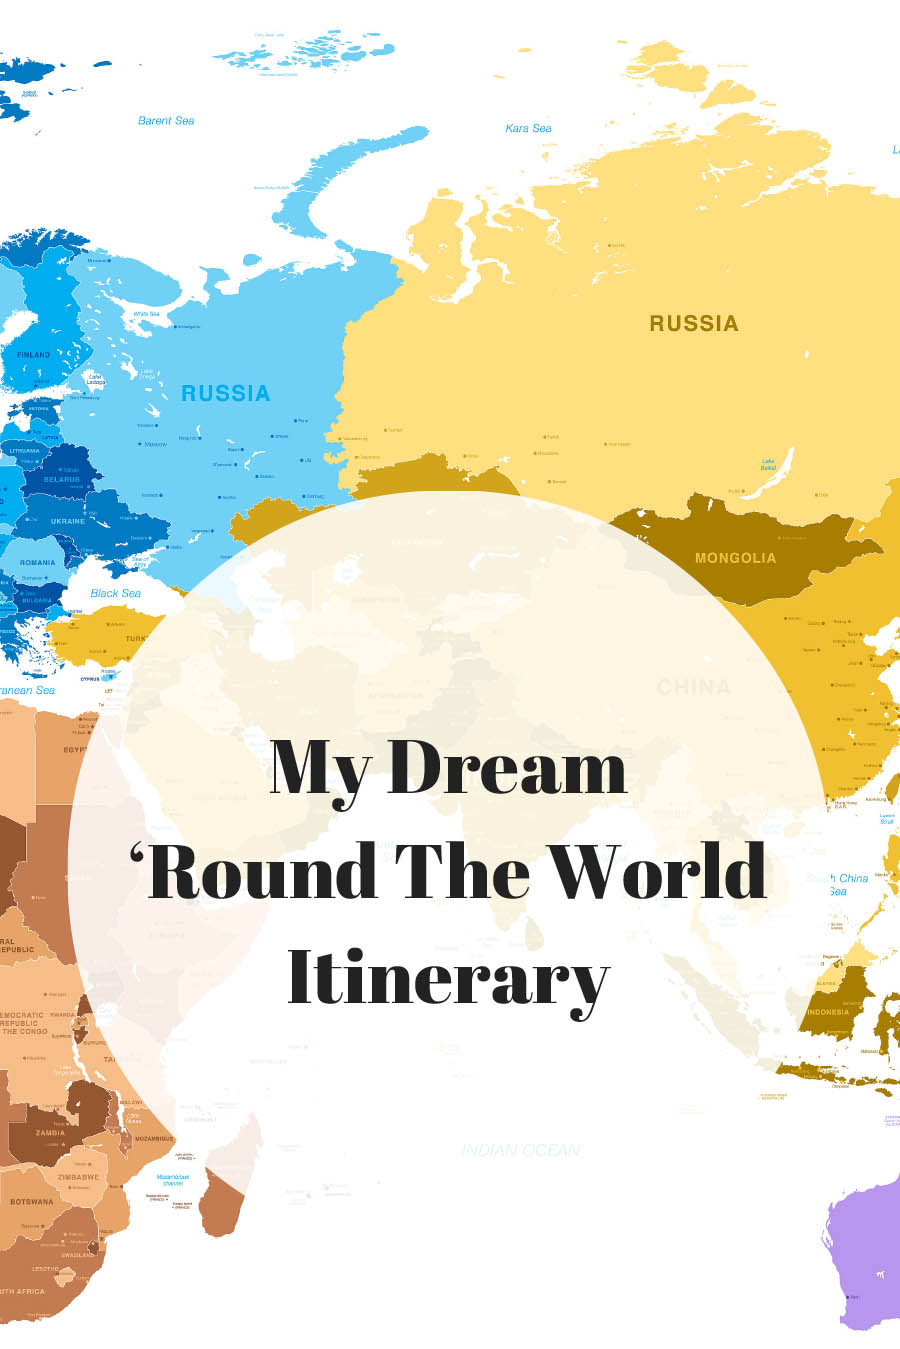 My Dream 'Round the World Itinerary